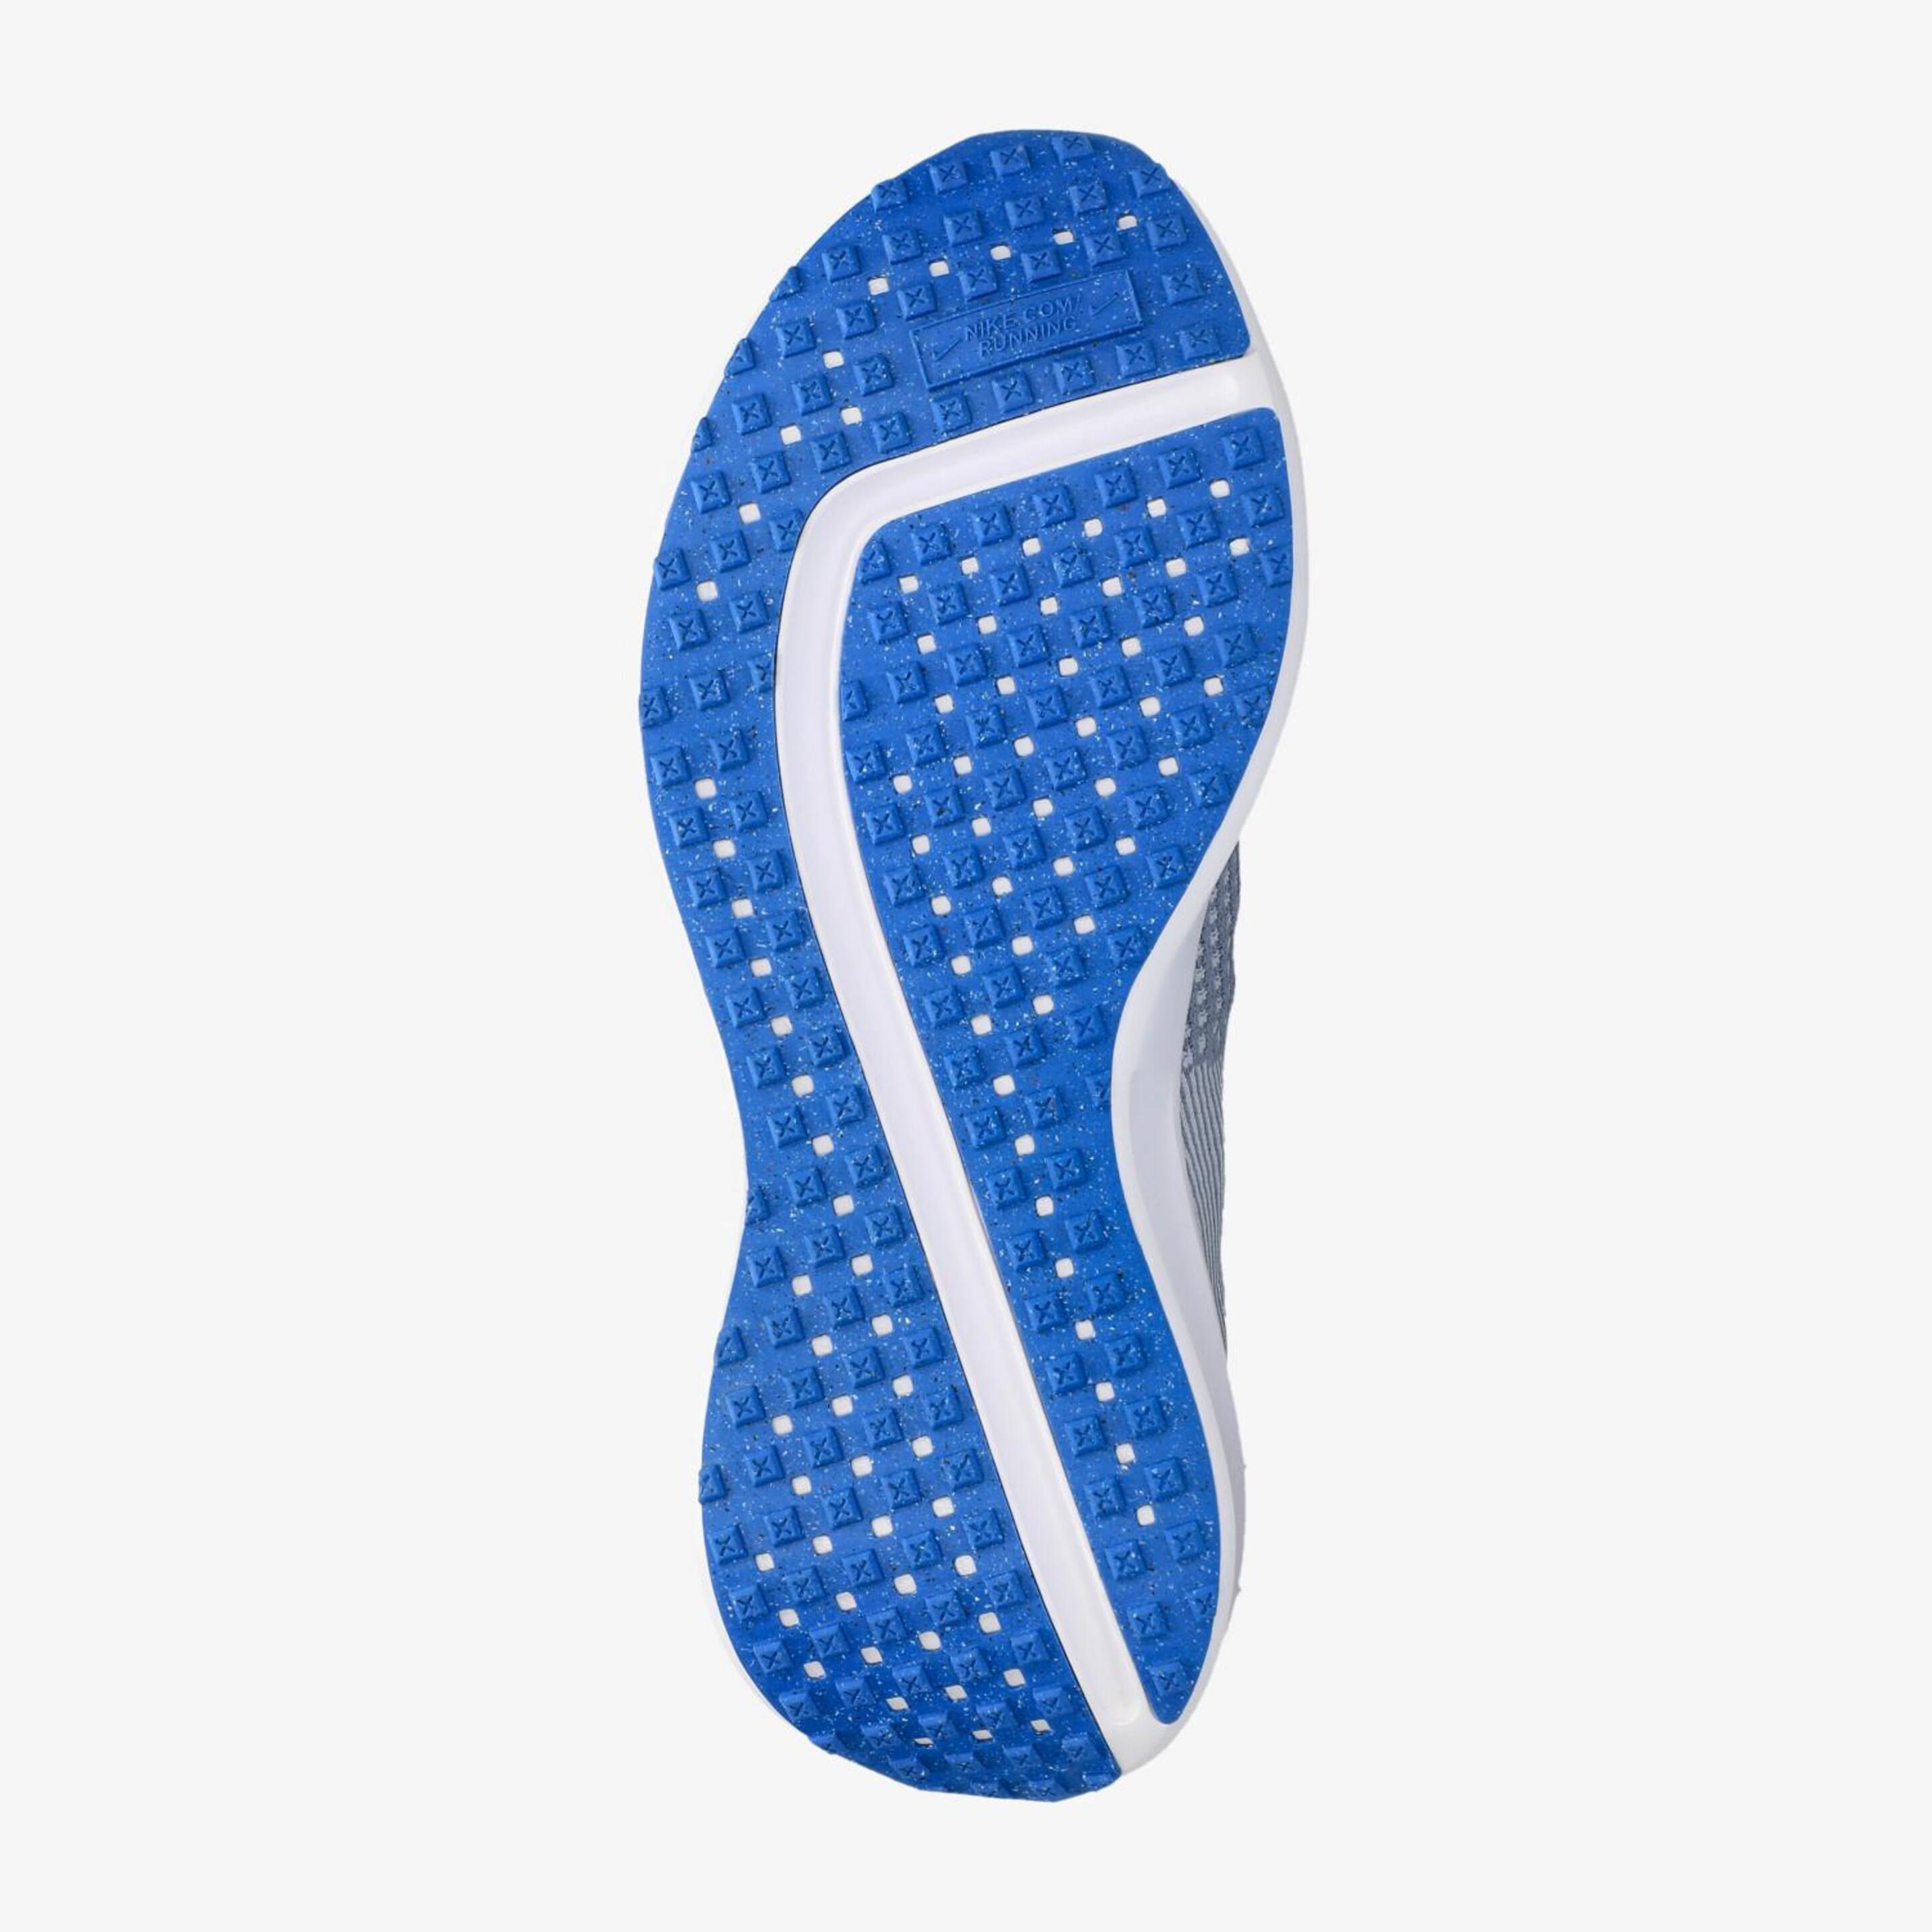 Nike Interact Run - Gris - Zapatillas Running Hombre